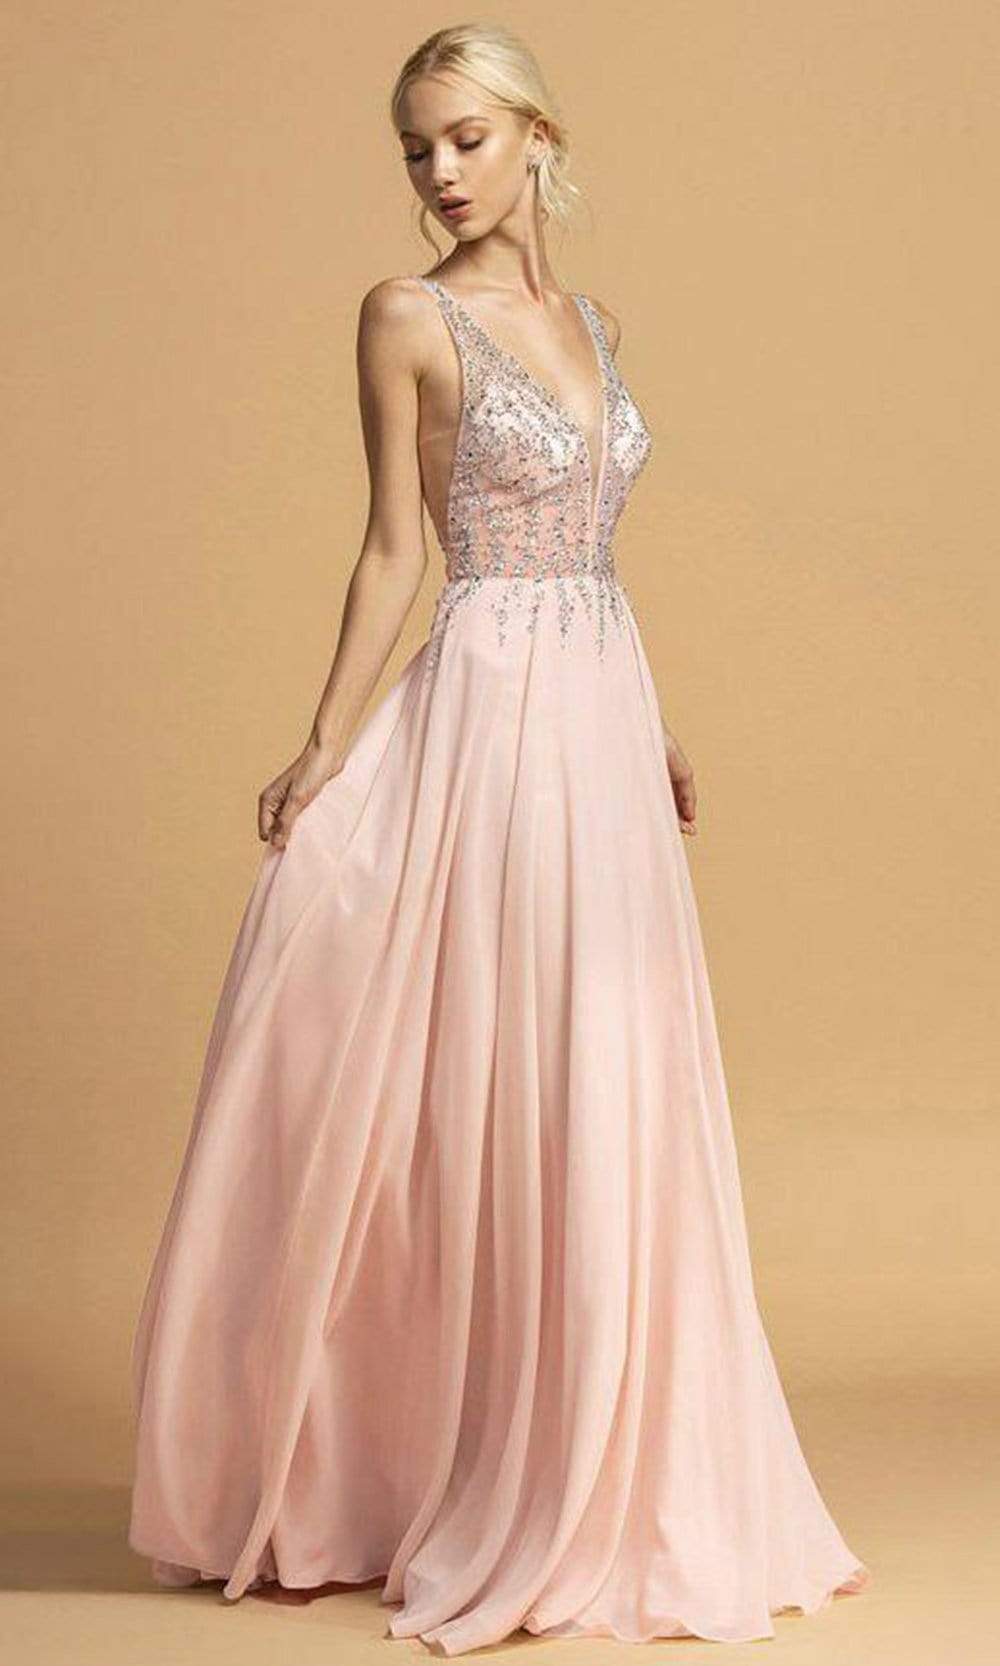 Image of Aspeed Design - L2207 Rhinestone Ornate Chiffon Long Dress